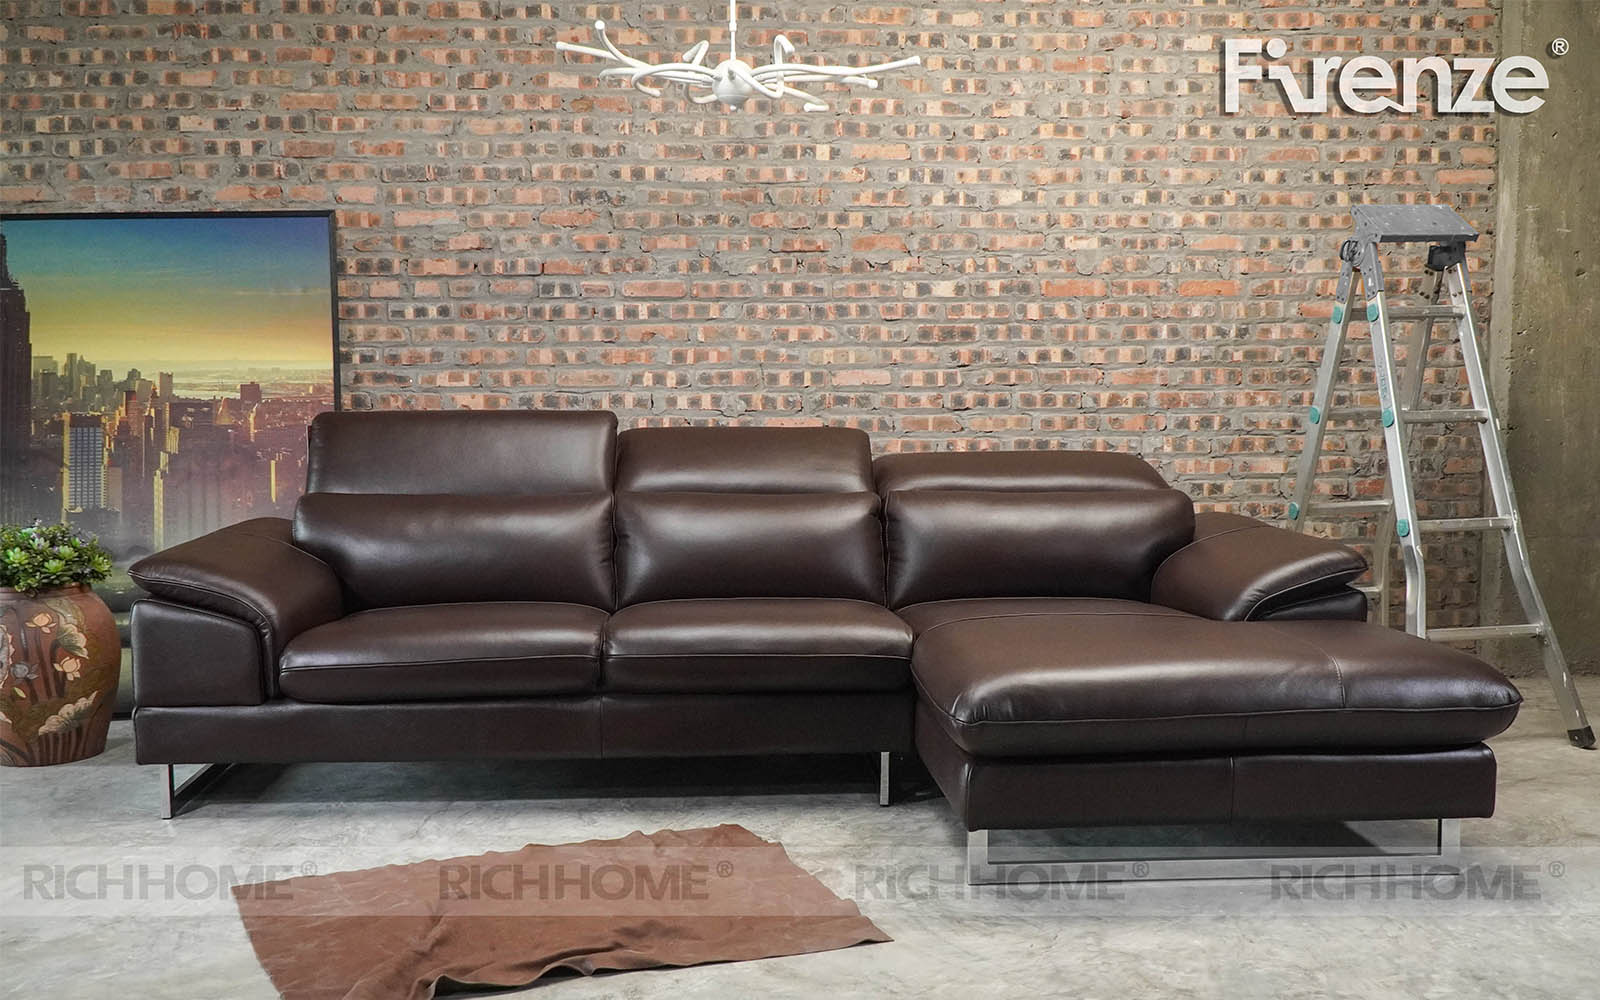 Cửa hàng bán ghế sofa nhập khẩu tại Hà Nội chính hãng - Ảnh 4